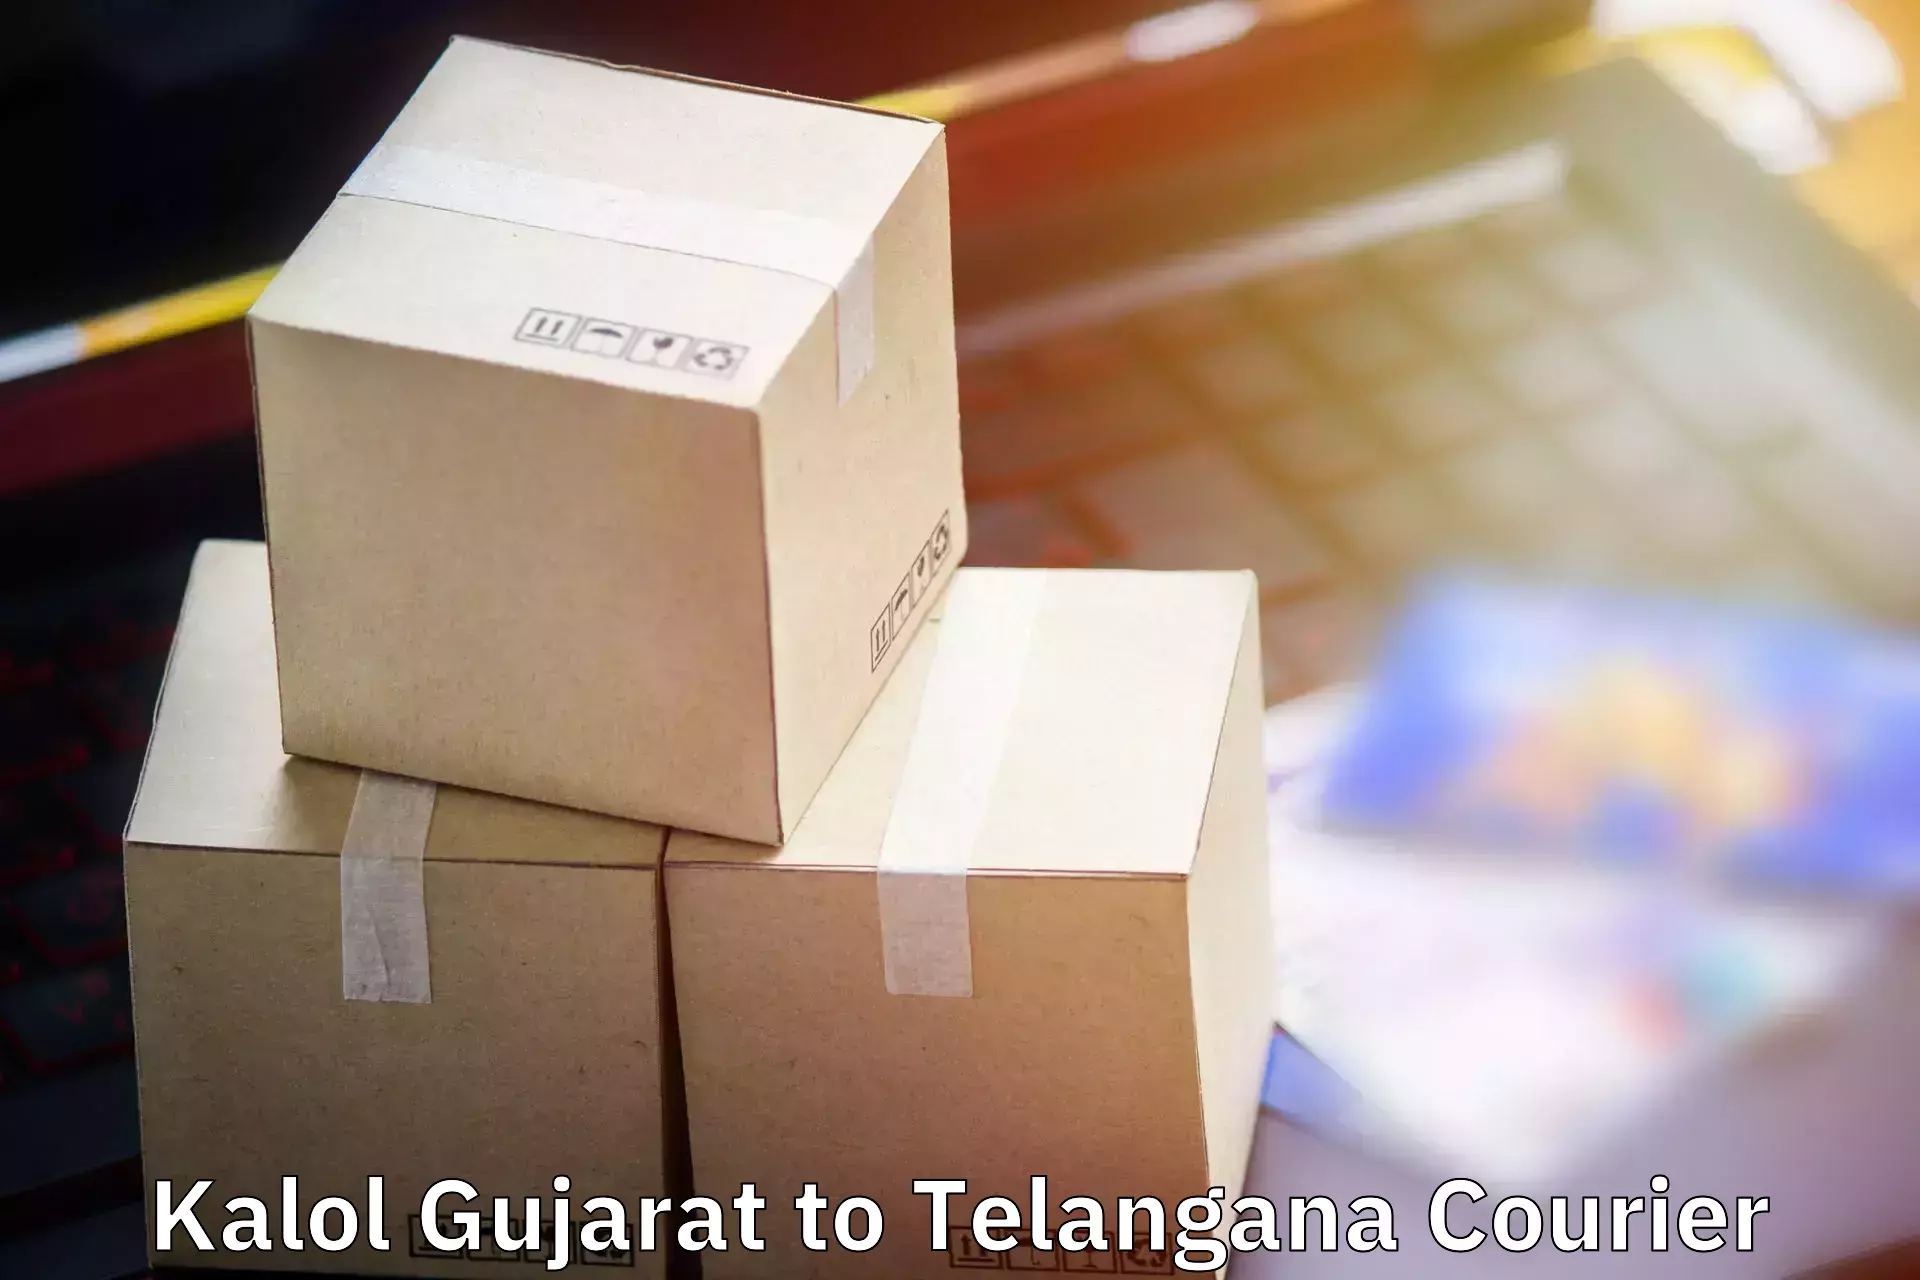 Baggage courier optimization Kalol Gujarat to Ramagundam